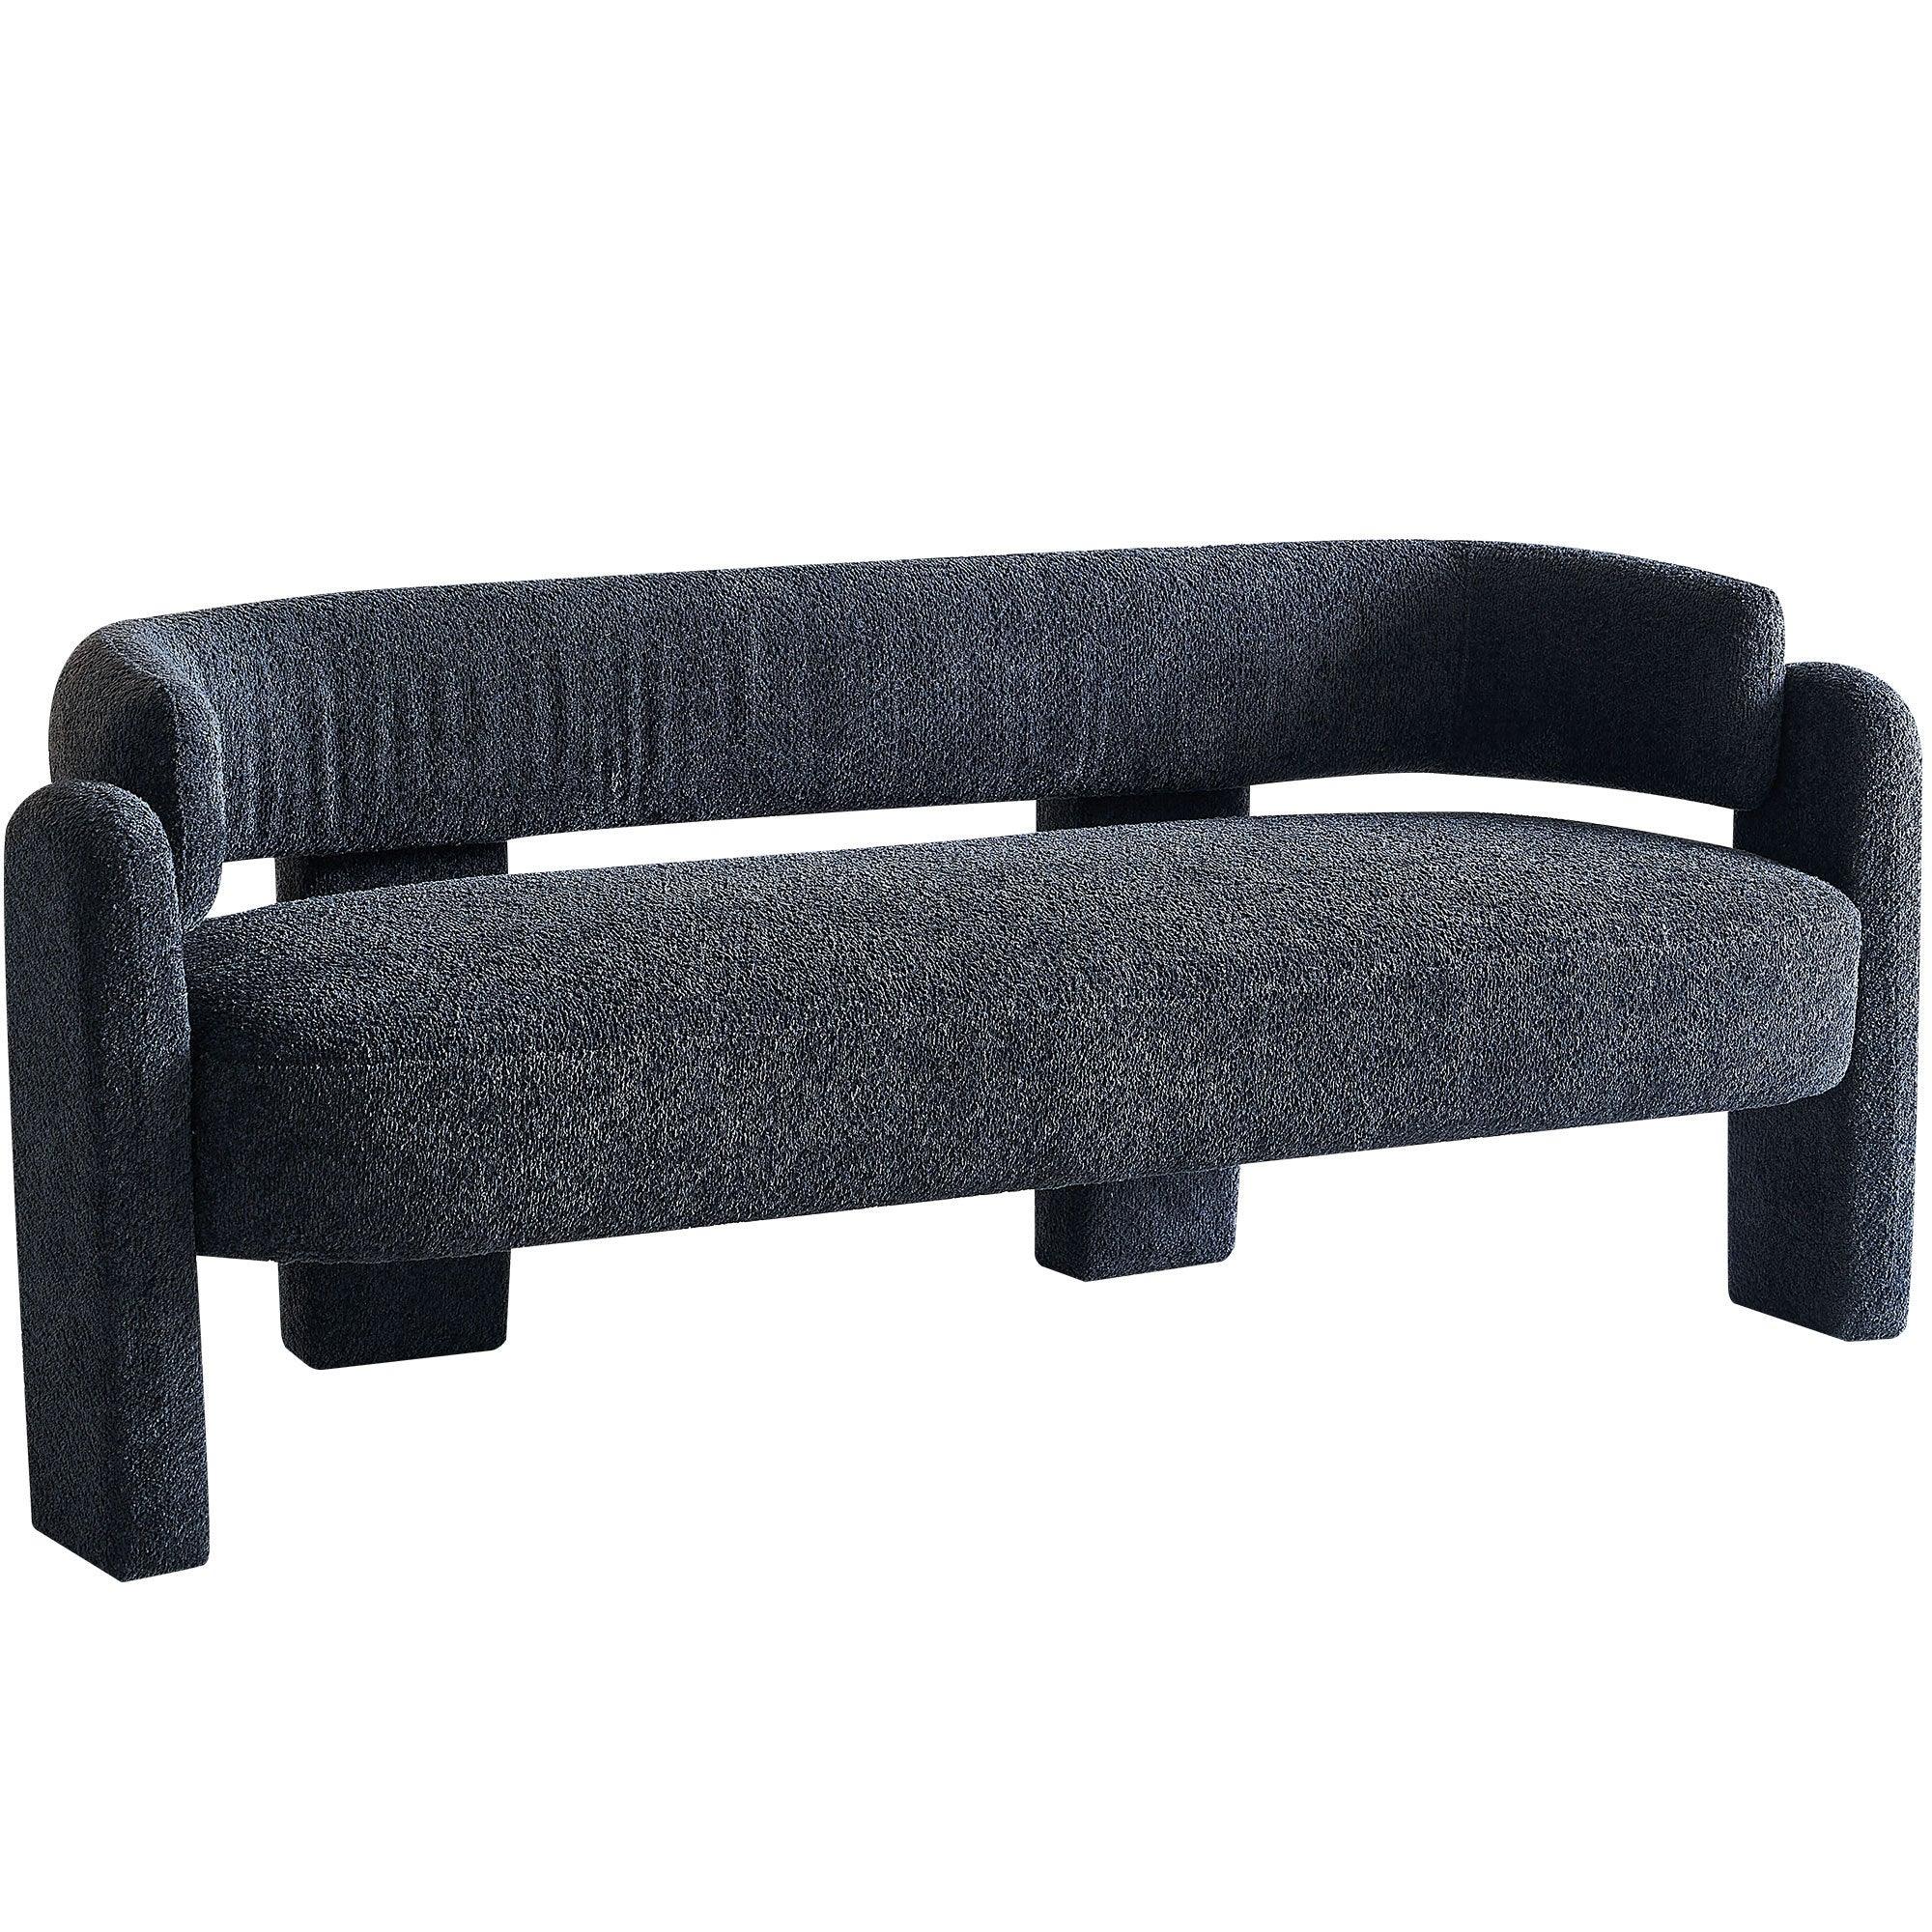 🆓🚛 75.59" Wide Boucle Upholstery Modern Sofa for Living Room, Dark Gray